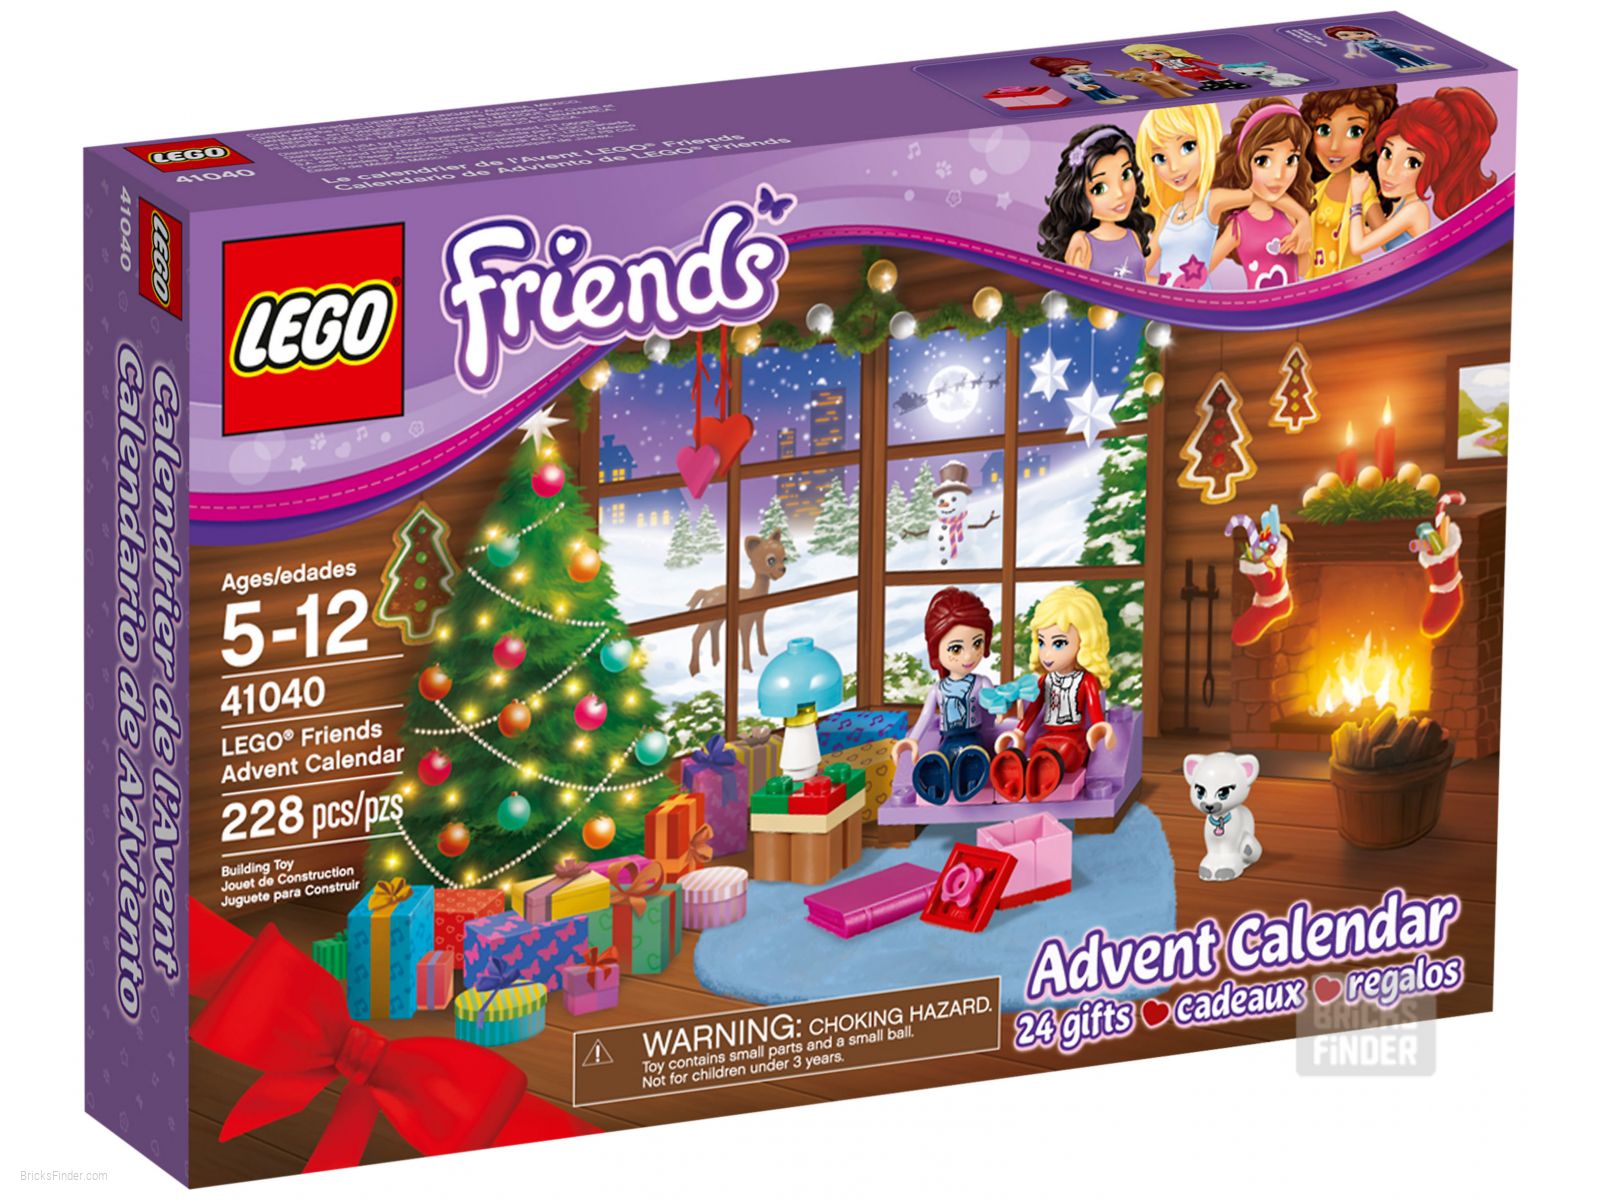 LEGO Friends Advent Calendar 2015 (Friends) | BricksFinder.com - Best Deals & Discounts